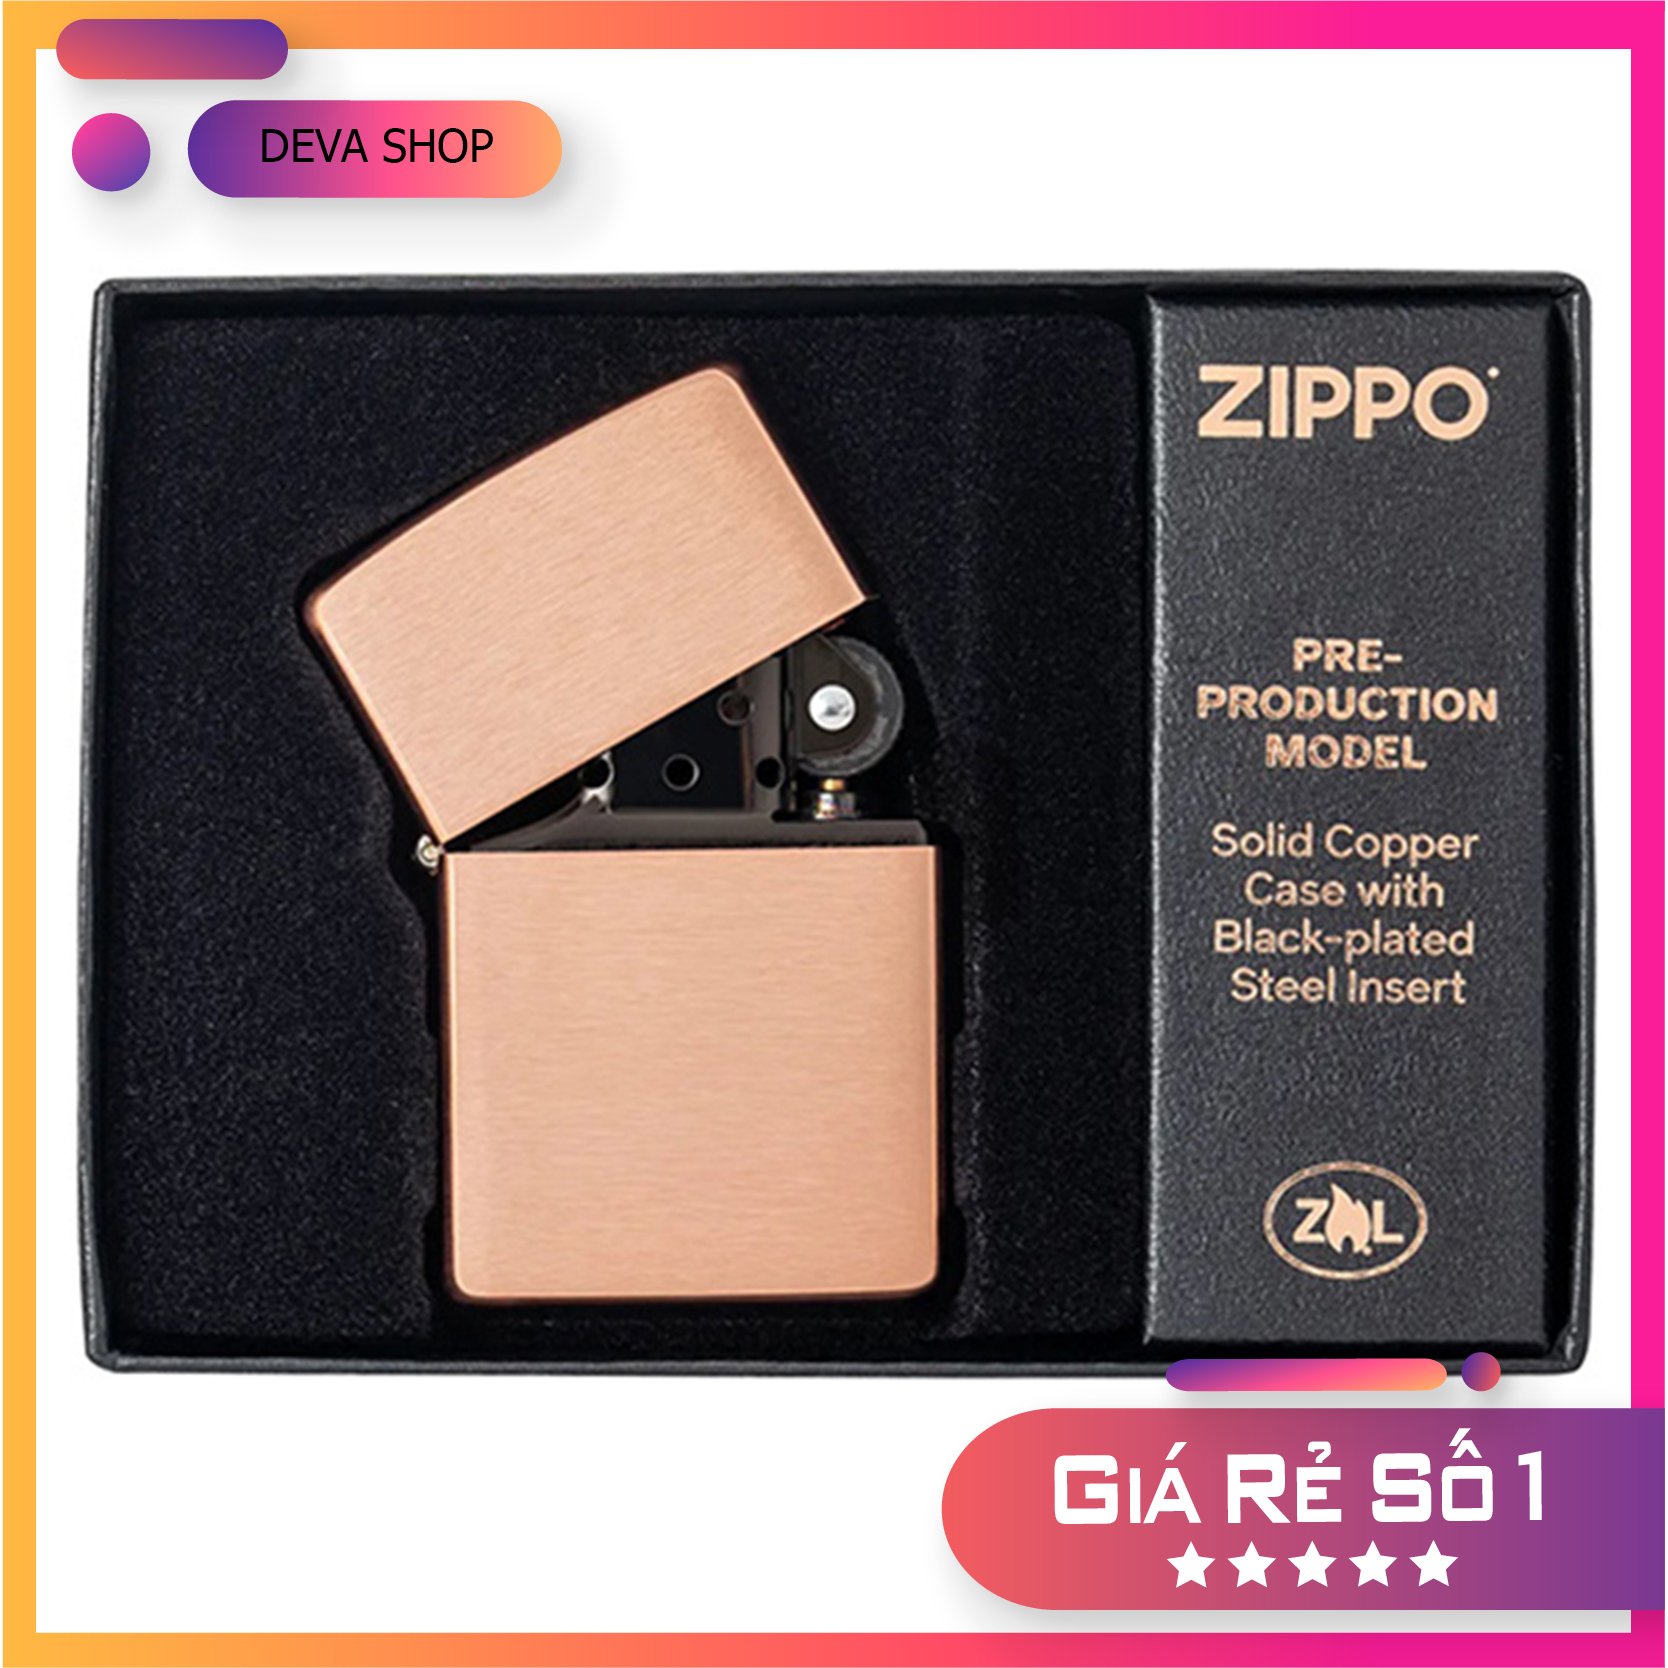 DEVA SHOP Zippo Solid Copper – Đồng đỏ 2022 mã Z201